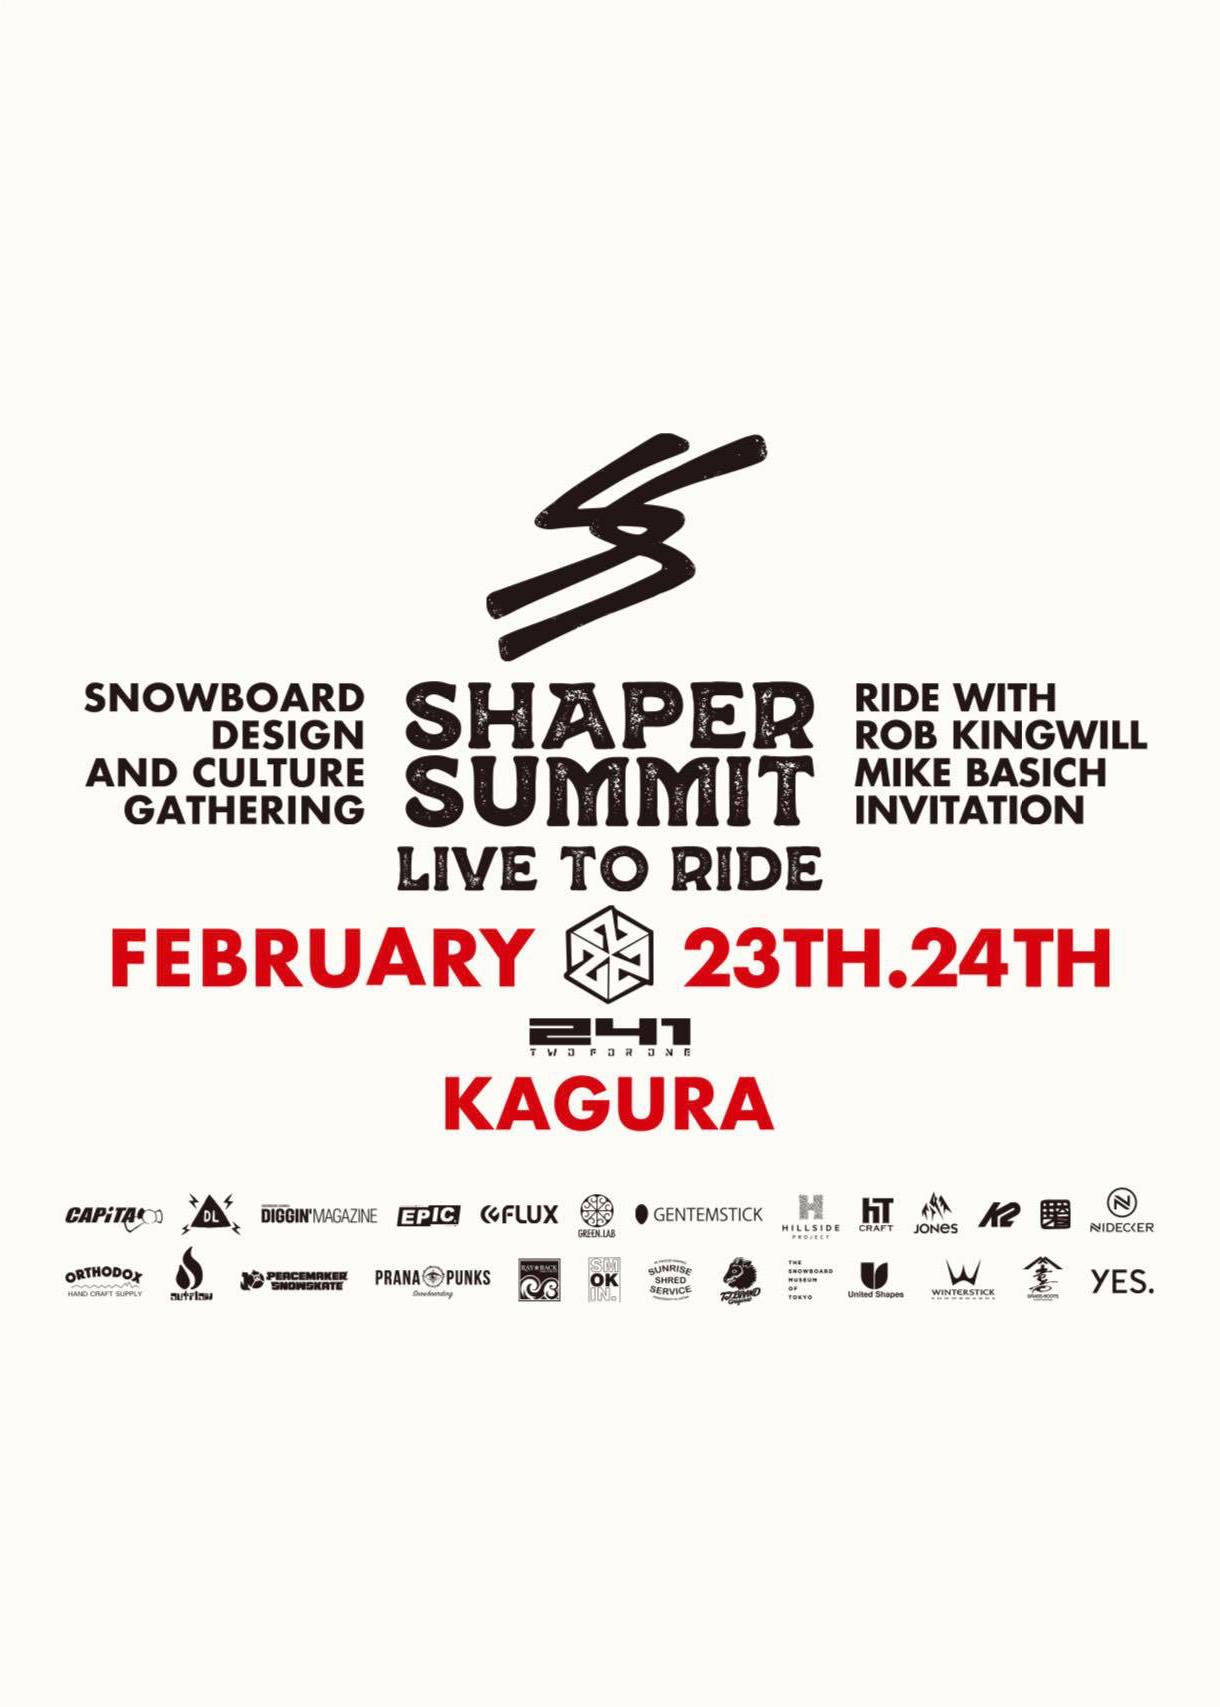 shaper summit japan 2020